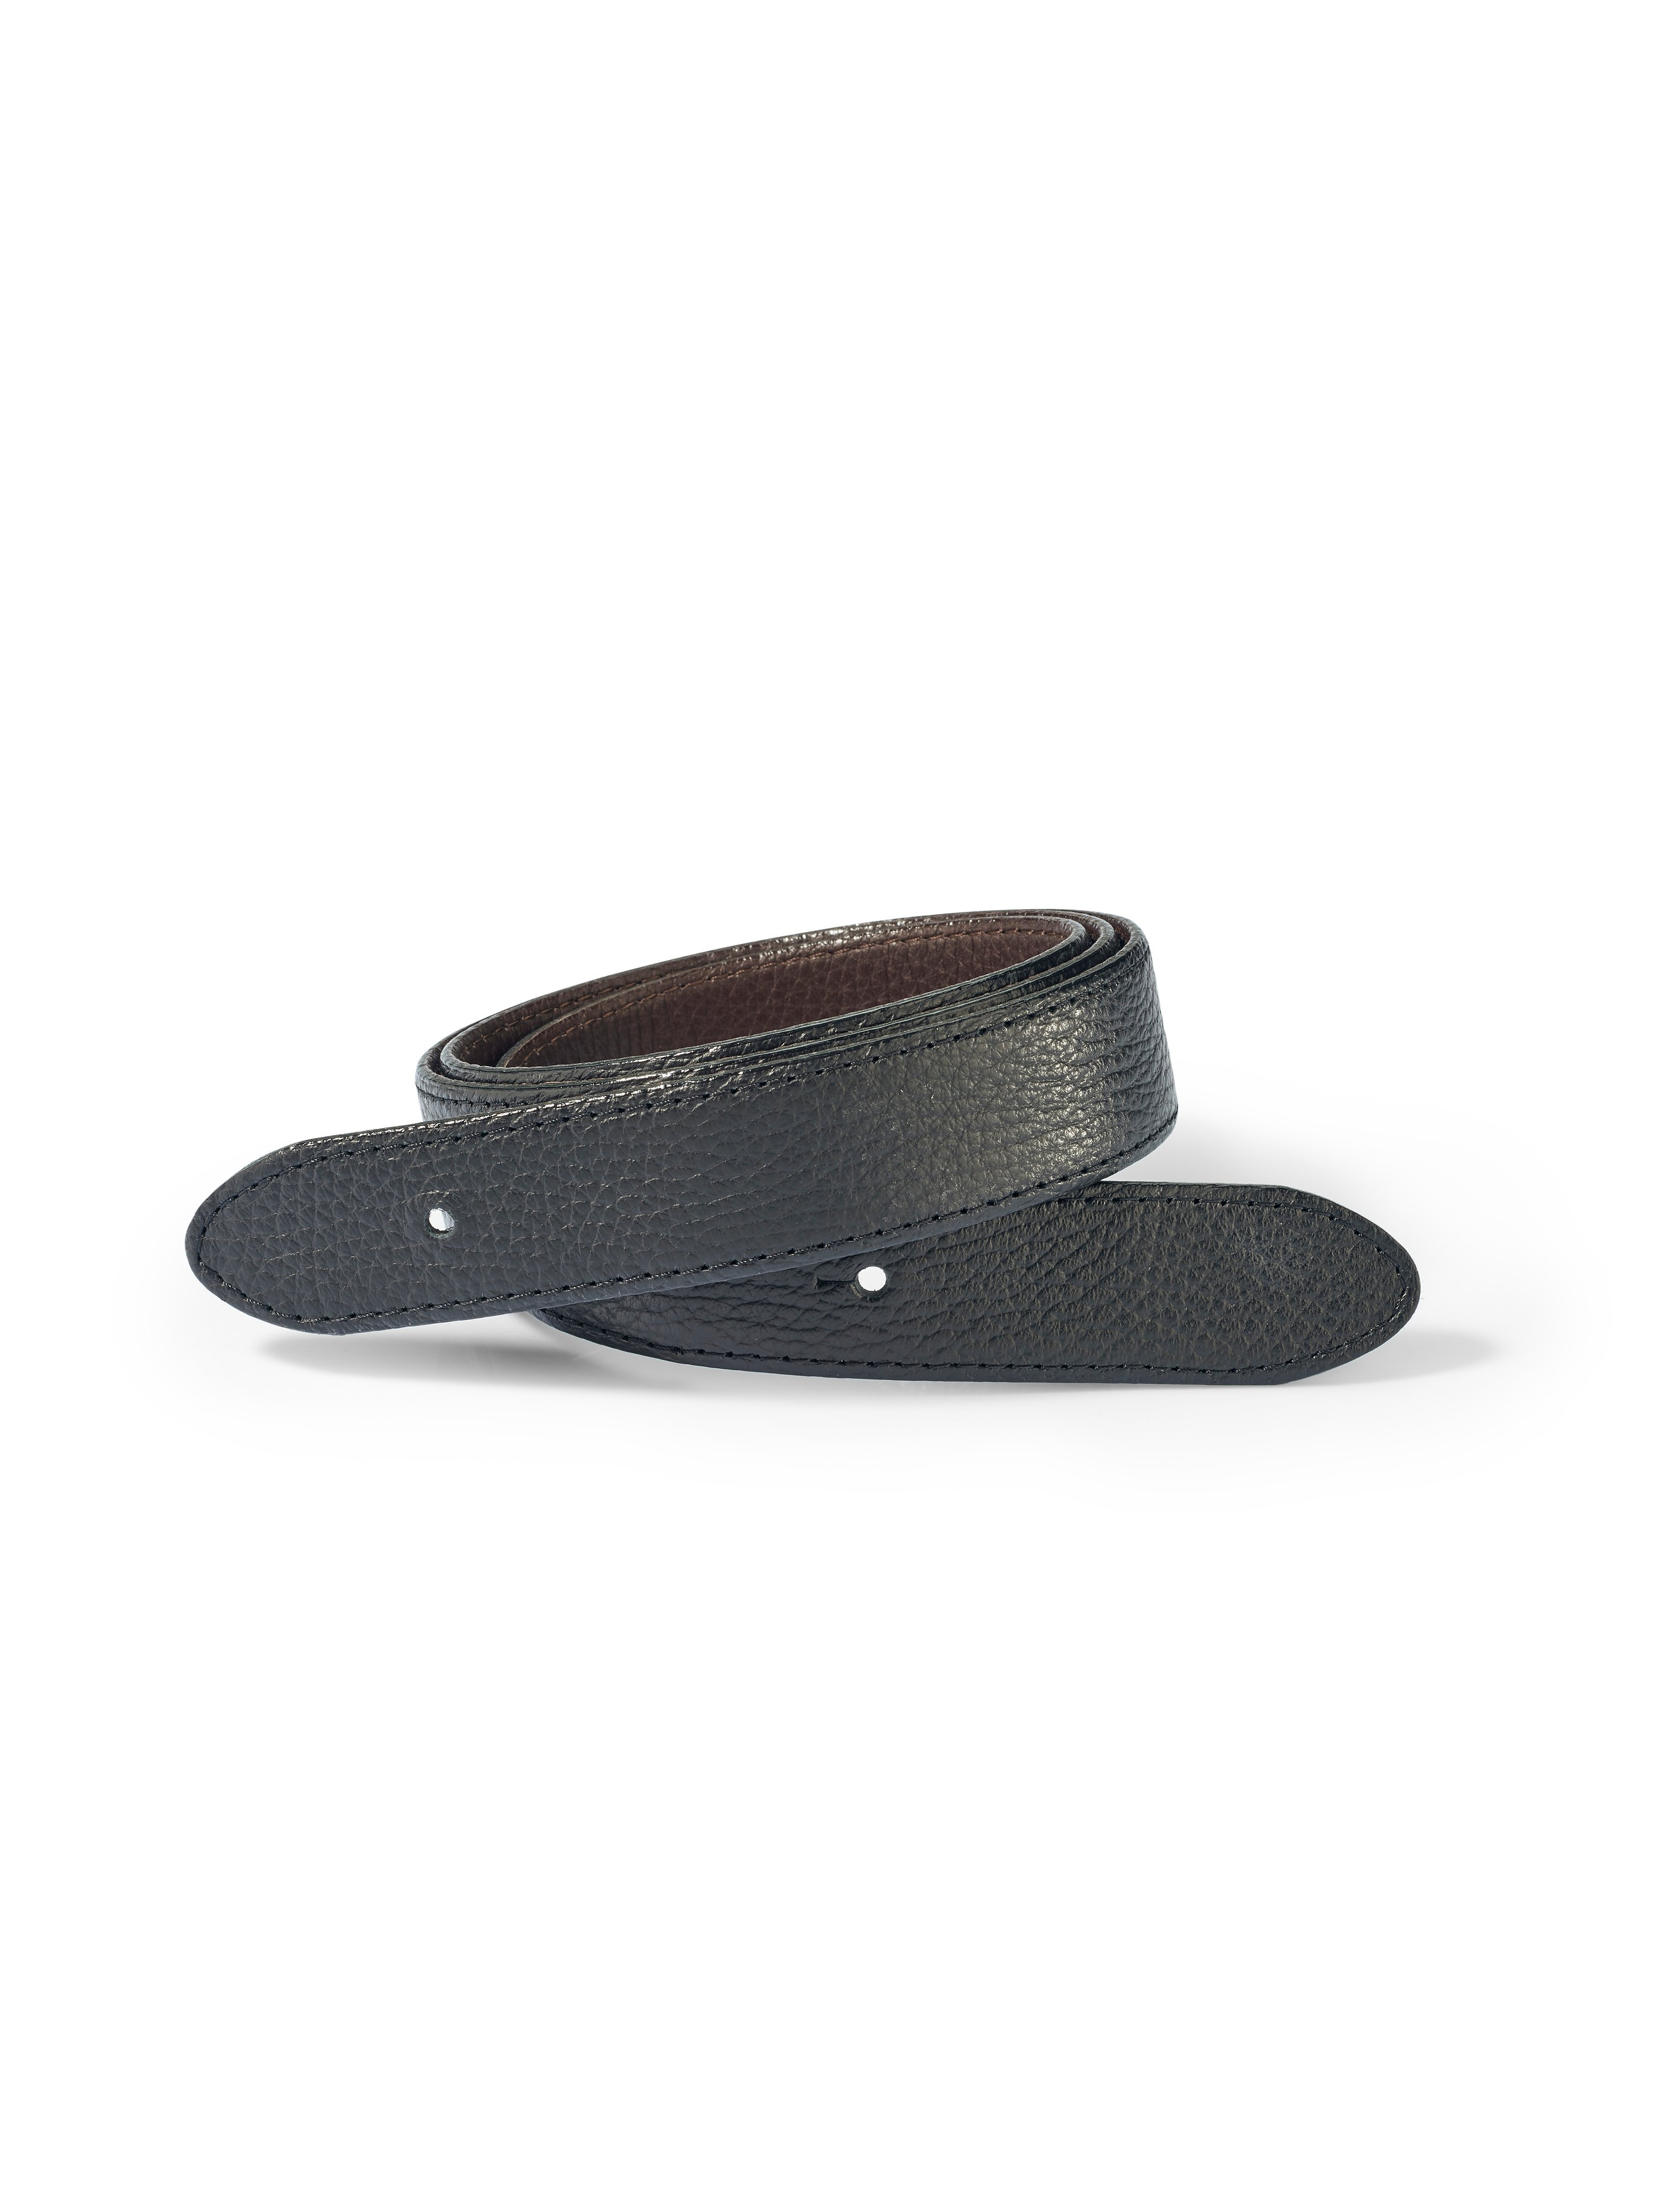 Leather belt strap Fadenmeister Berlin black